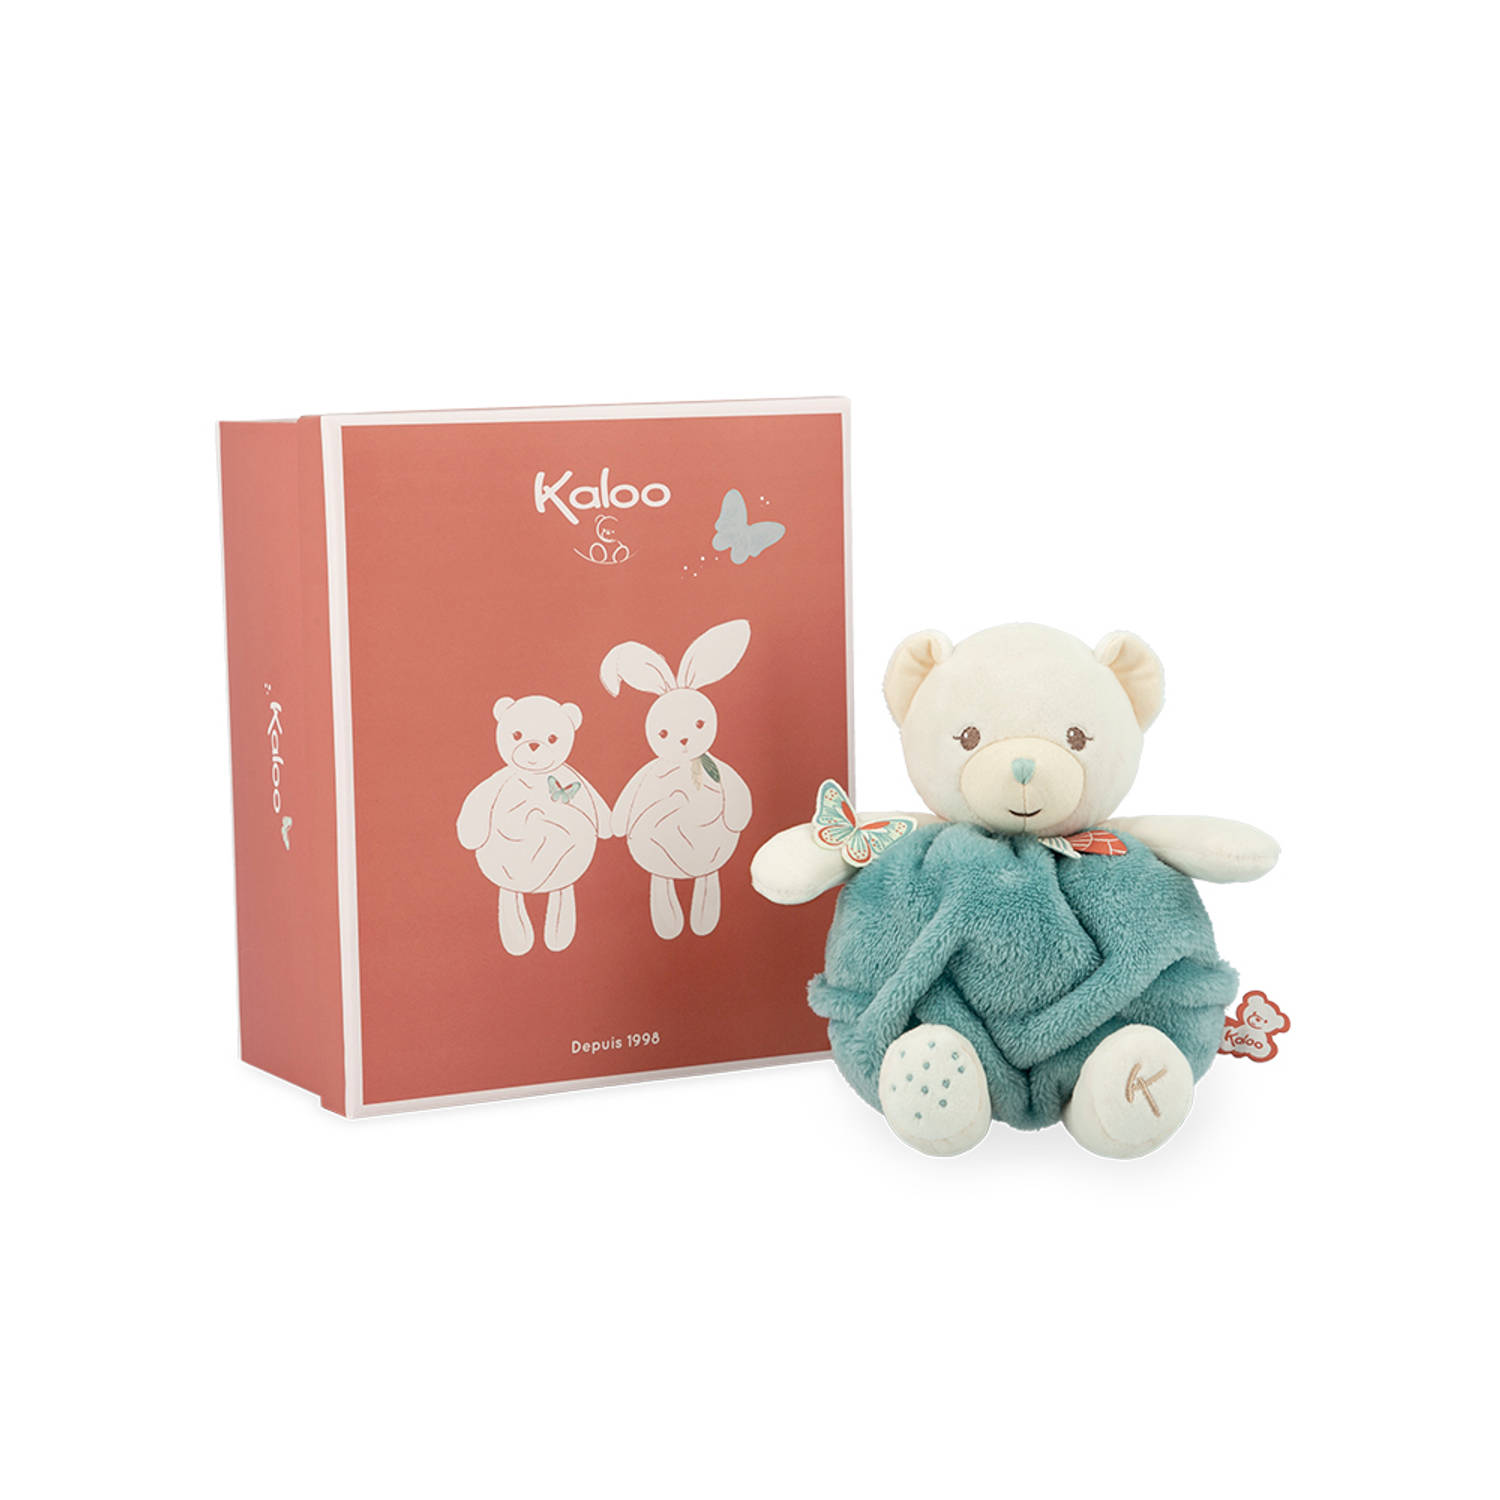 Kaloo Plume - Bubbel van liefde beer